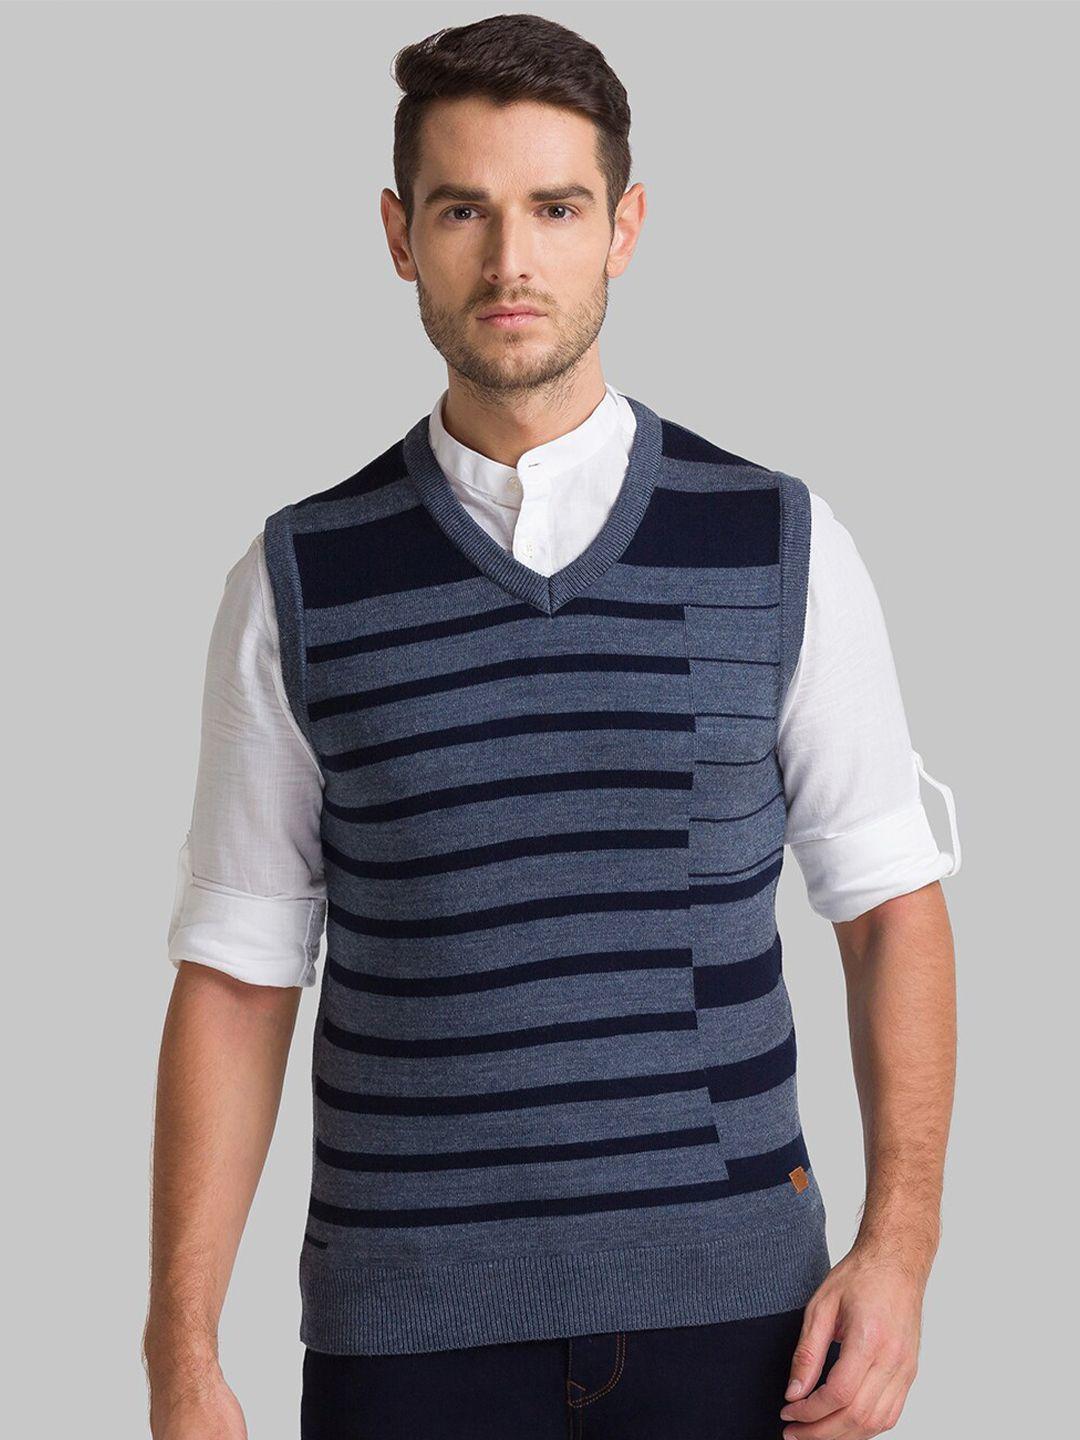 parx men blue striped sweater vest